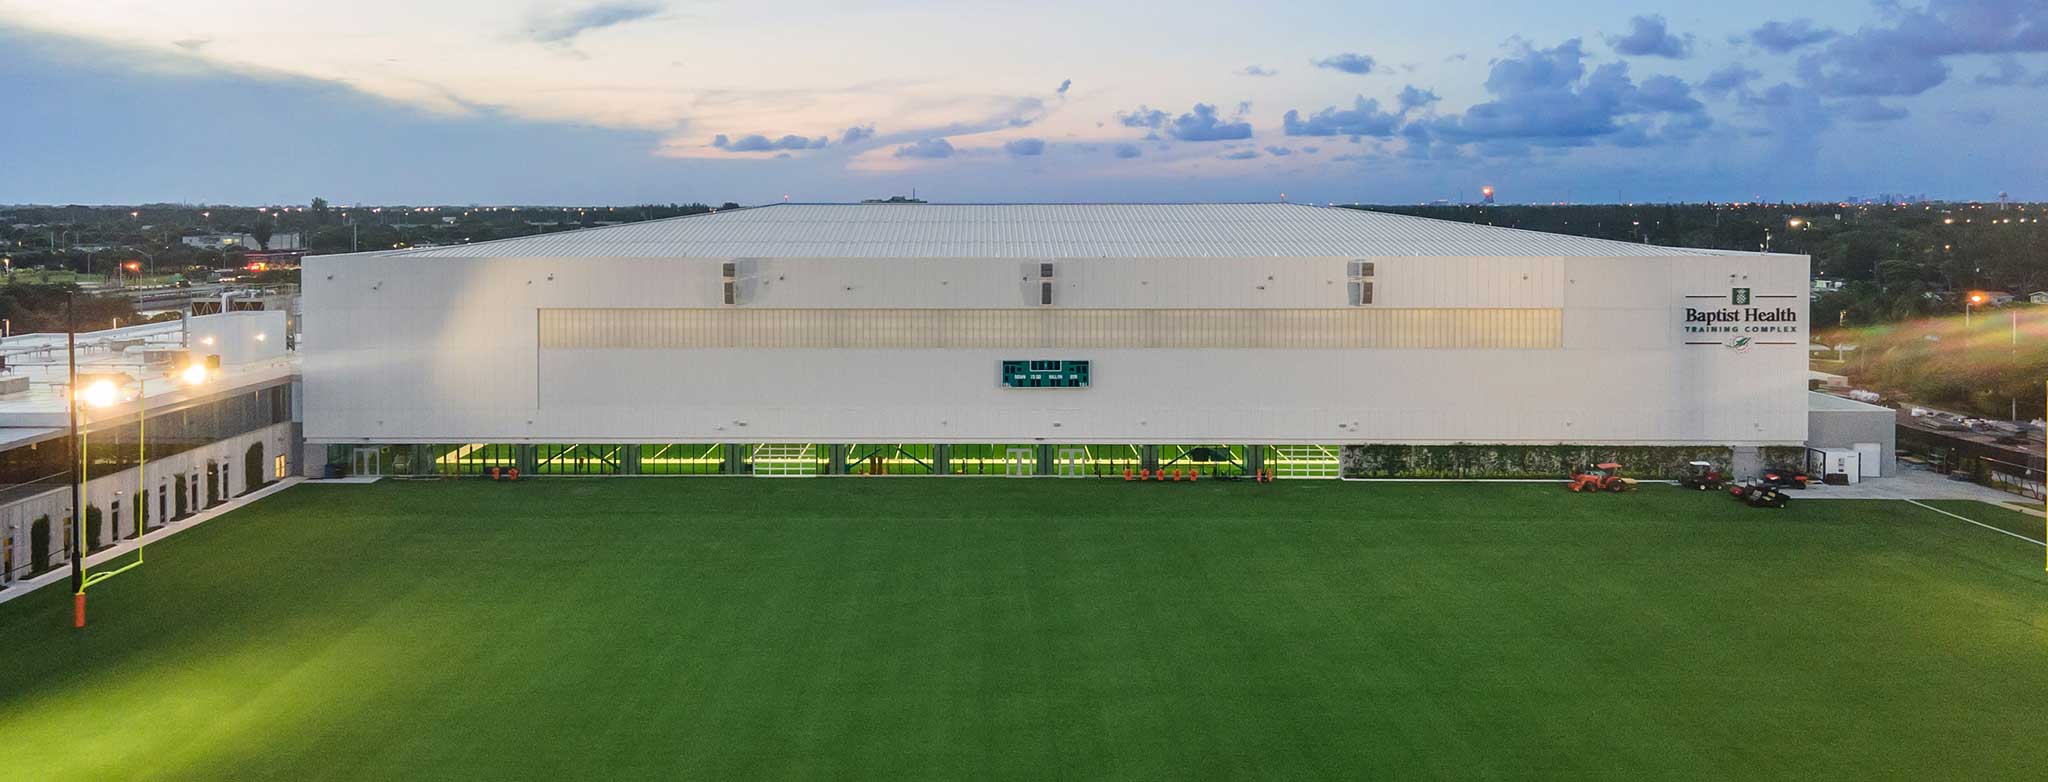 Miami Dolphins Training Facility